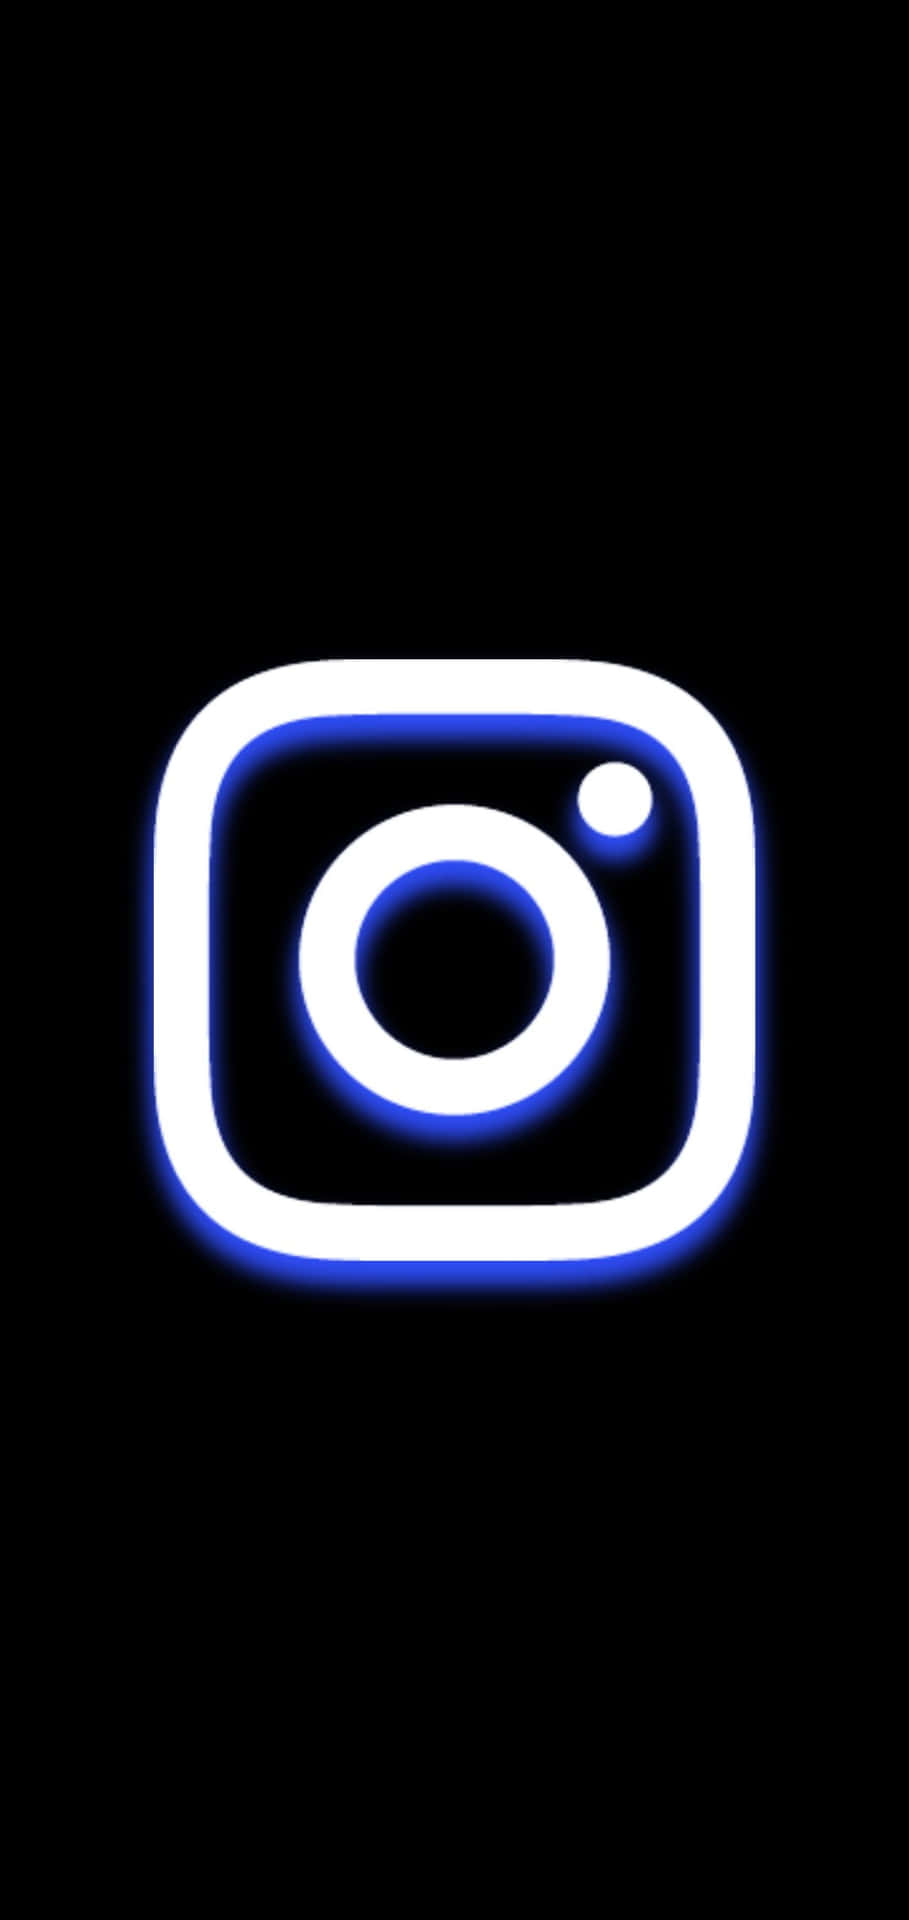 Logode Instagram Blanco Y Azul Fondo Negro